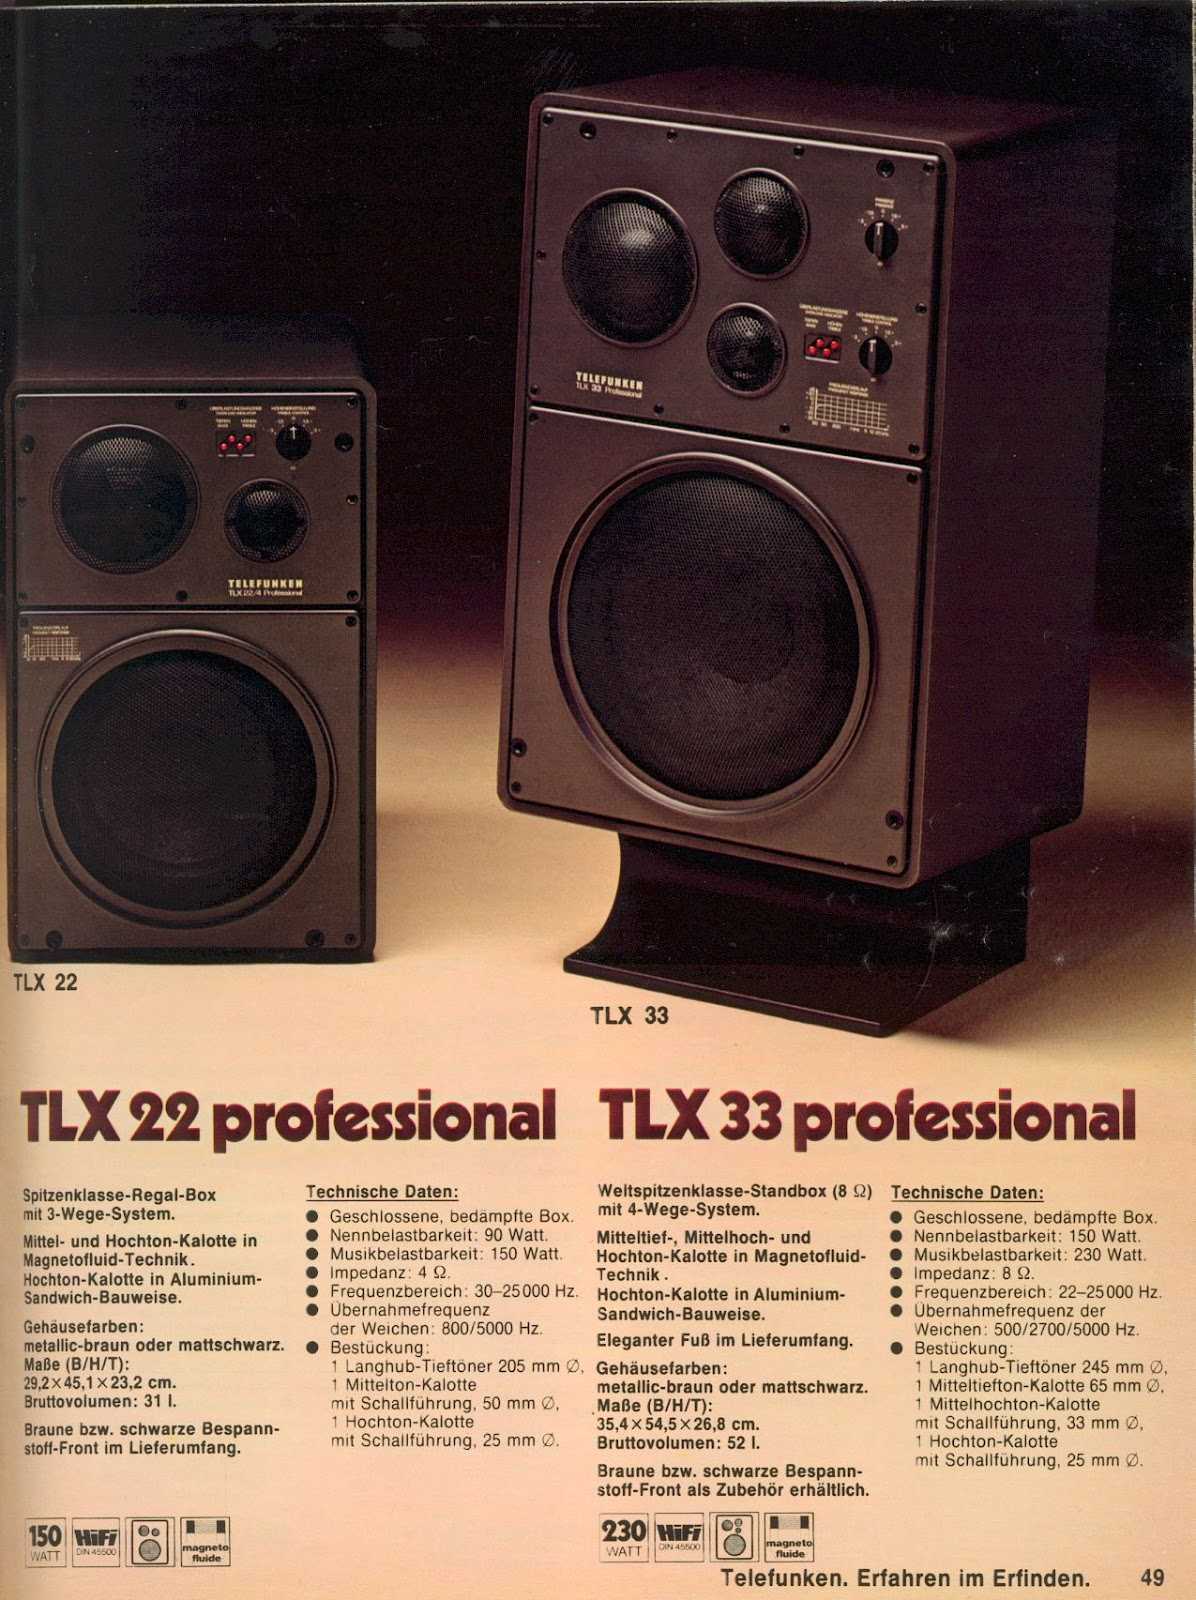 Telefunken TLX 3 редкий, очень редкий четырех-полосный громкоговоритель от бренда Telefunken, которому мы обязаны магнитной ленте когда еще в 1935г, он состоял в консорциуме AEG и видео в формате PAL Среди прочих профессиональных акустика Telefunken TLX 3